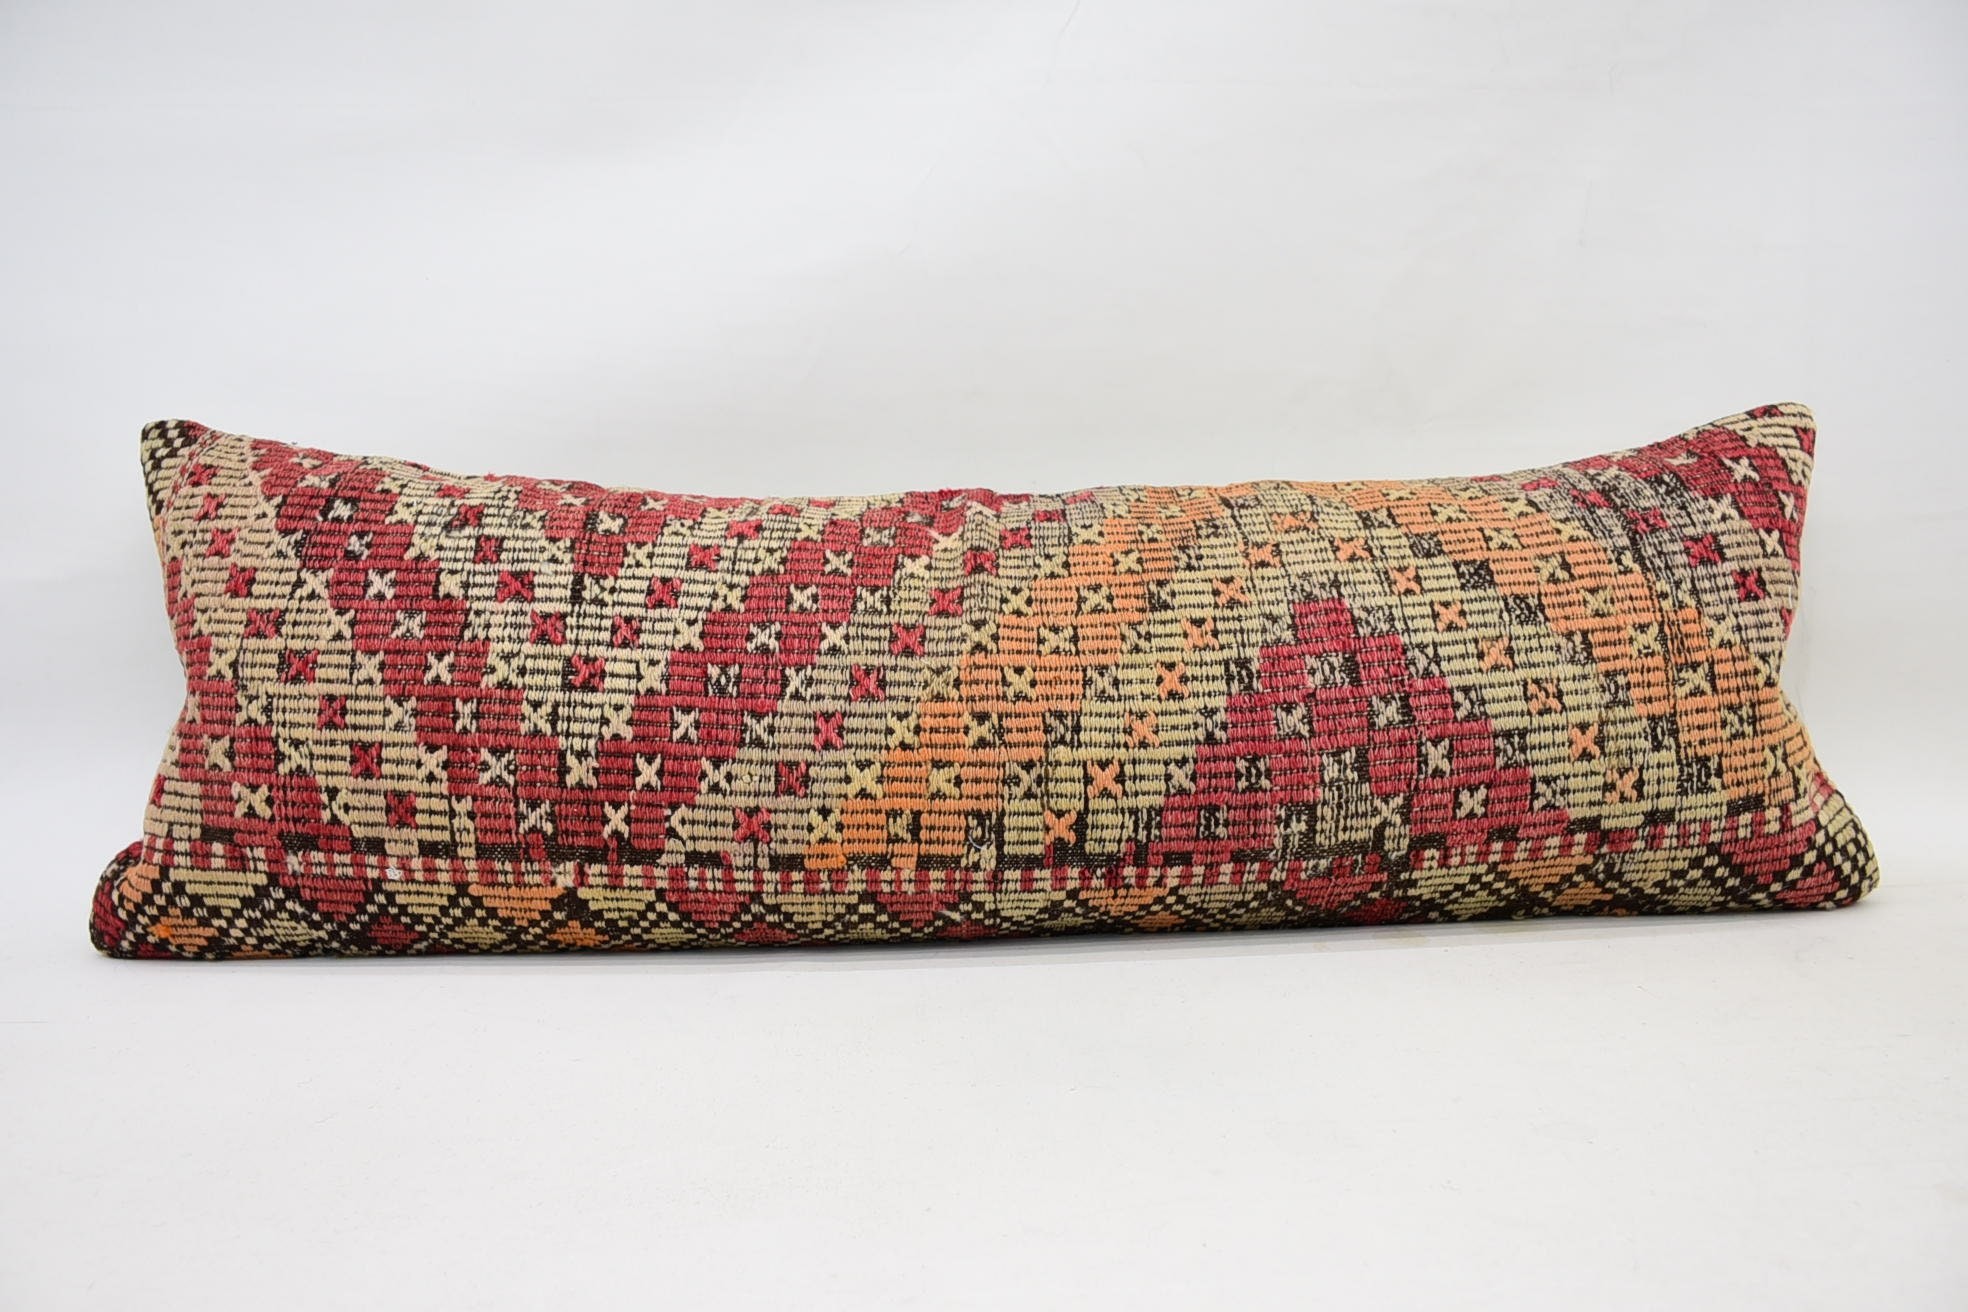 Neutral Cushion, Interior Designer Pillow, Vintage Kilim Throw Pillow, Antique Pillows, 16"x48" Red Cushion Cover